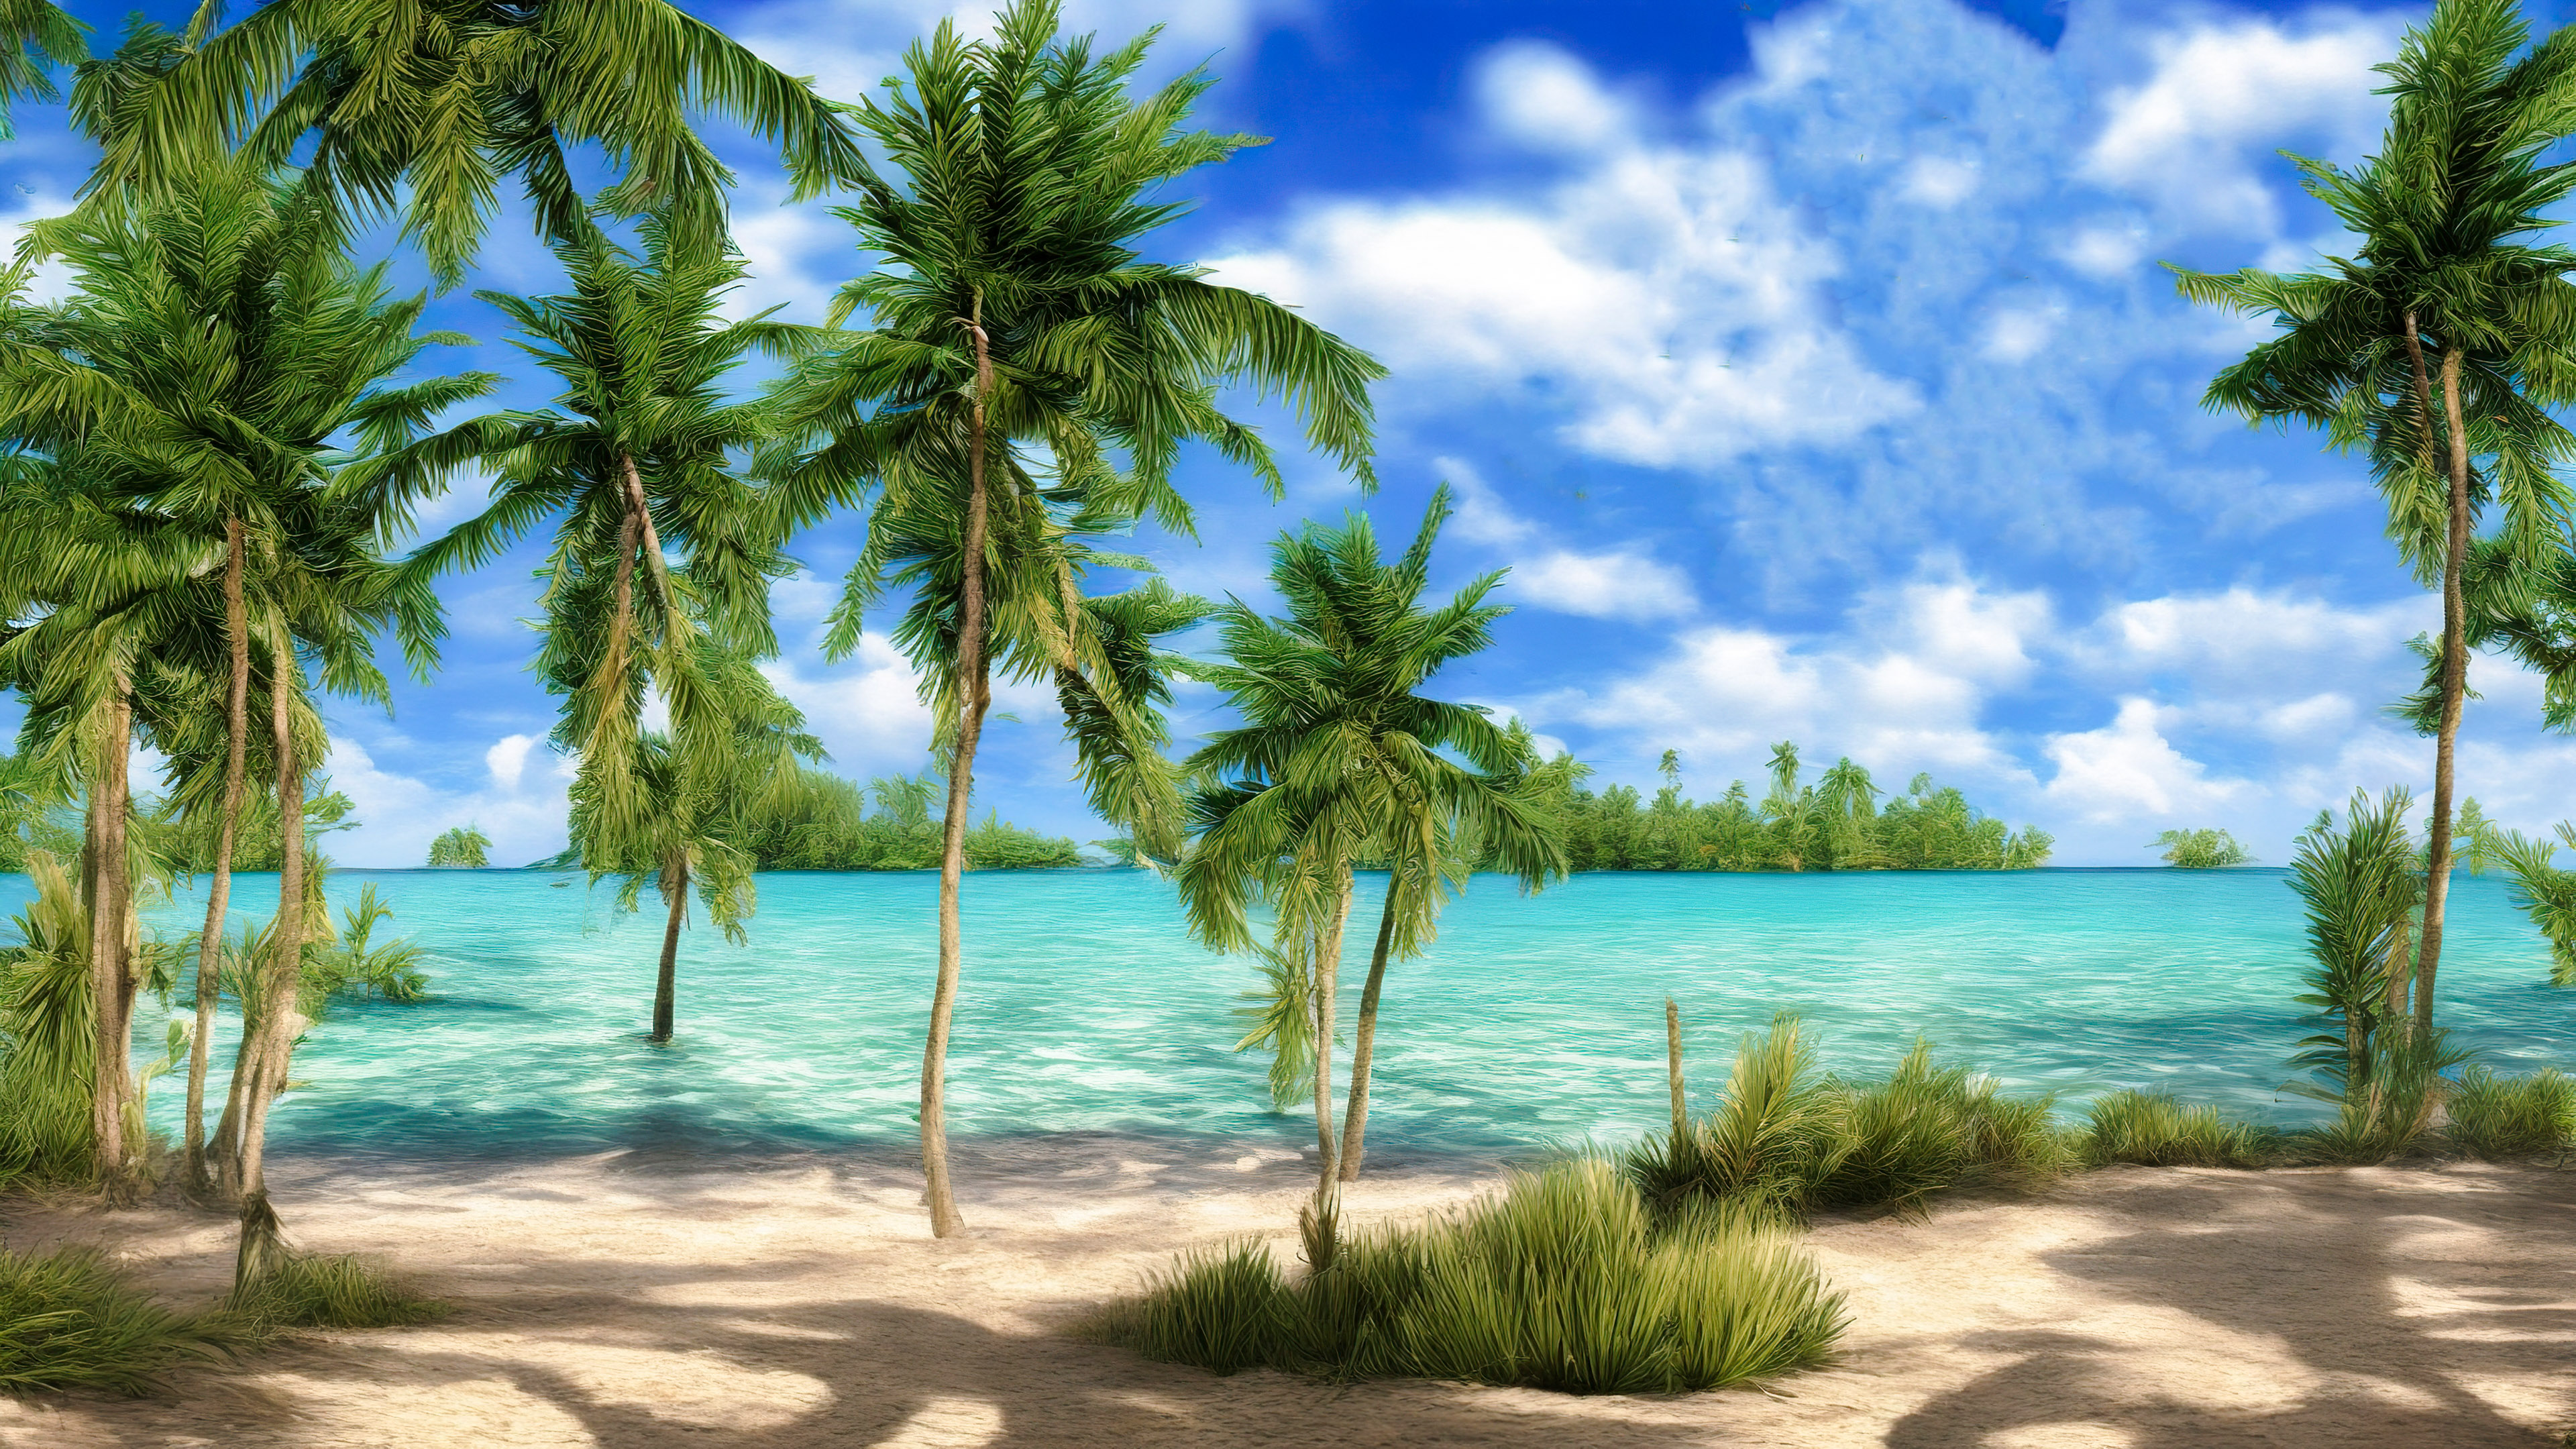 Téléchargez ce fond d'écran nature en 4K enchanteur illustrant une plage paisible avec des eaux turquoise cristallines et des palmiers balançant dans la brise.